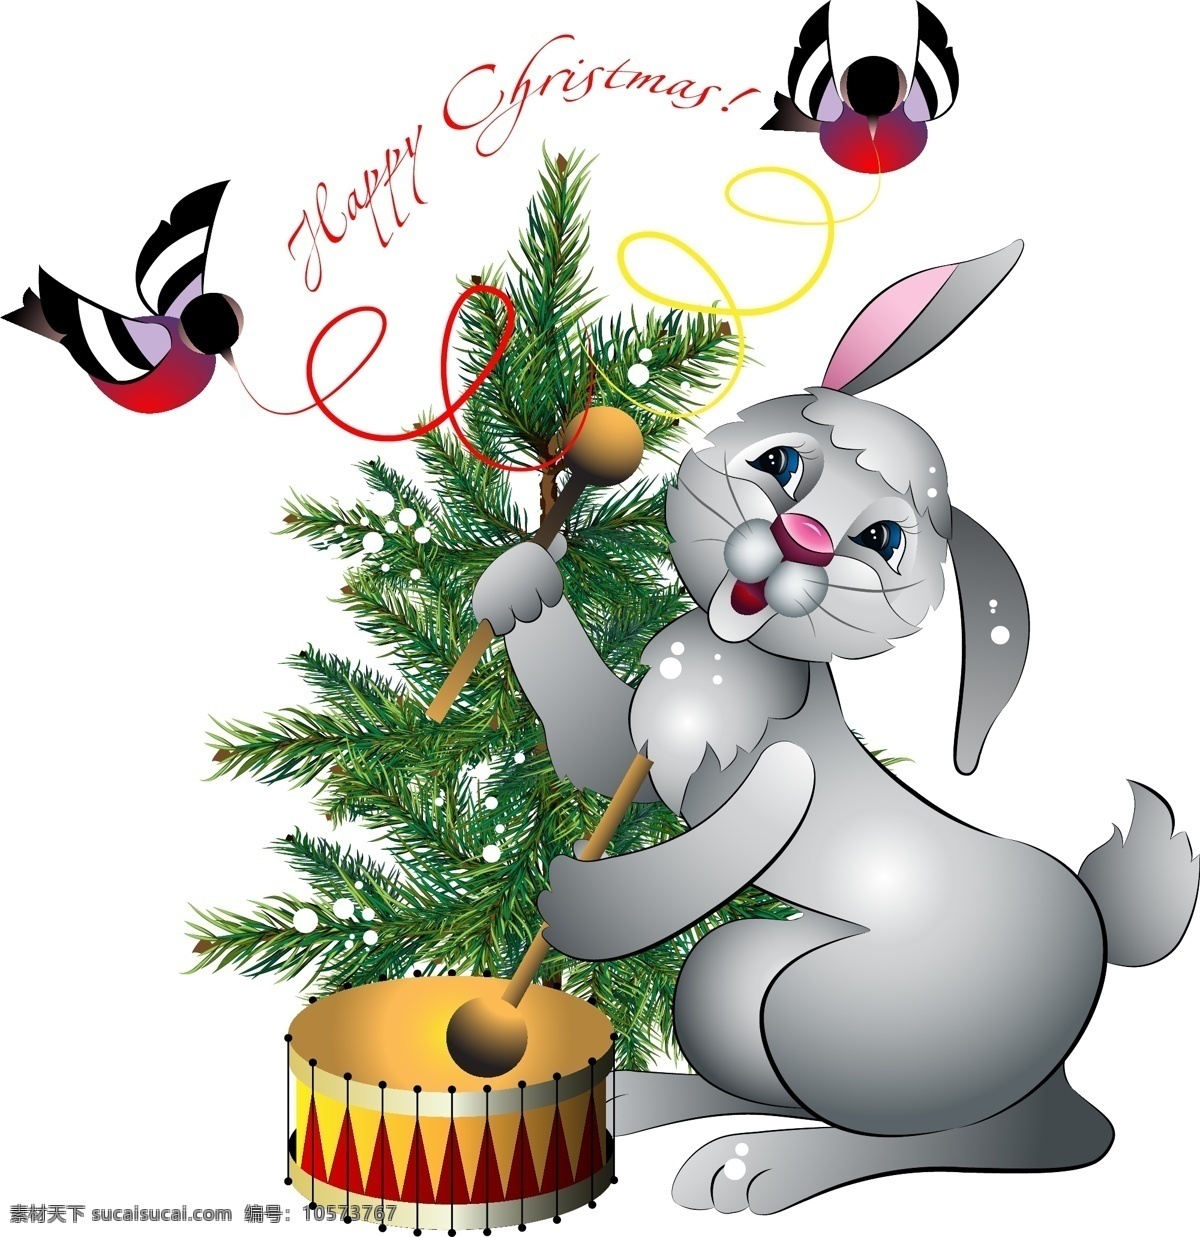 可爱 兔子 剪影 矢量 卡通 可爱的 丝带 兔 姿态空间 小圣诞树 材料的数量 矢量图 花纹花边